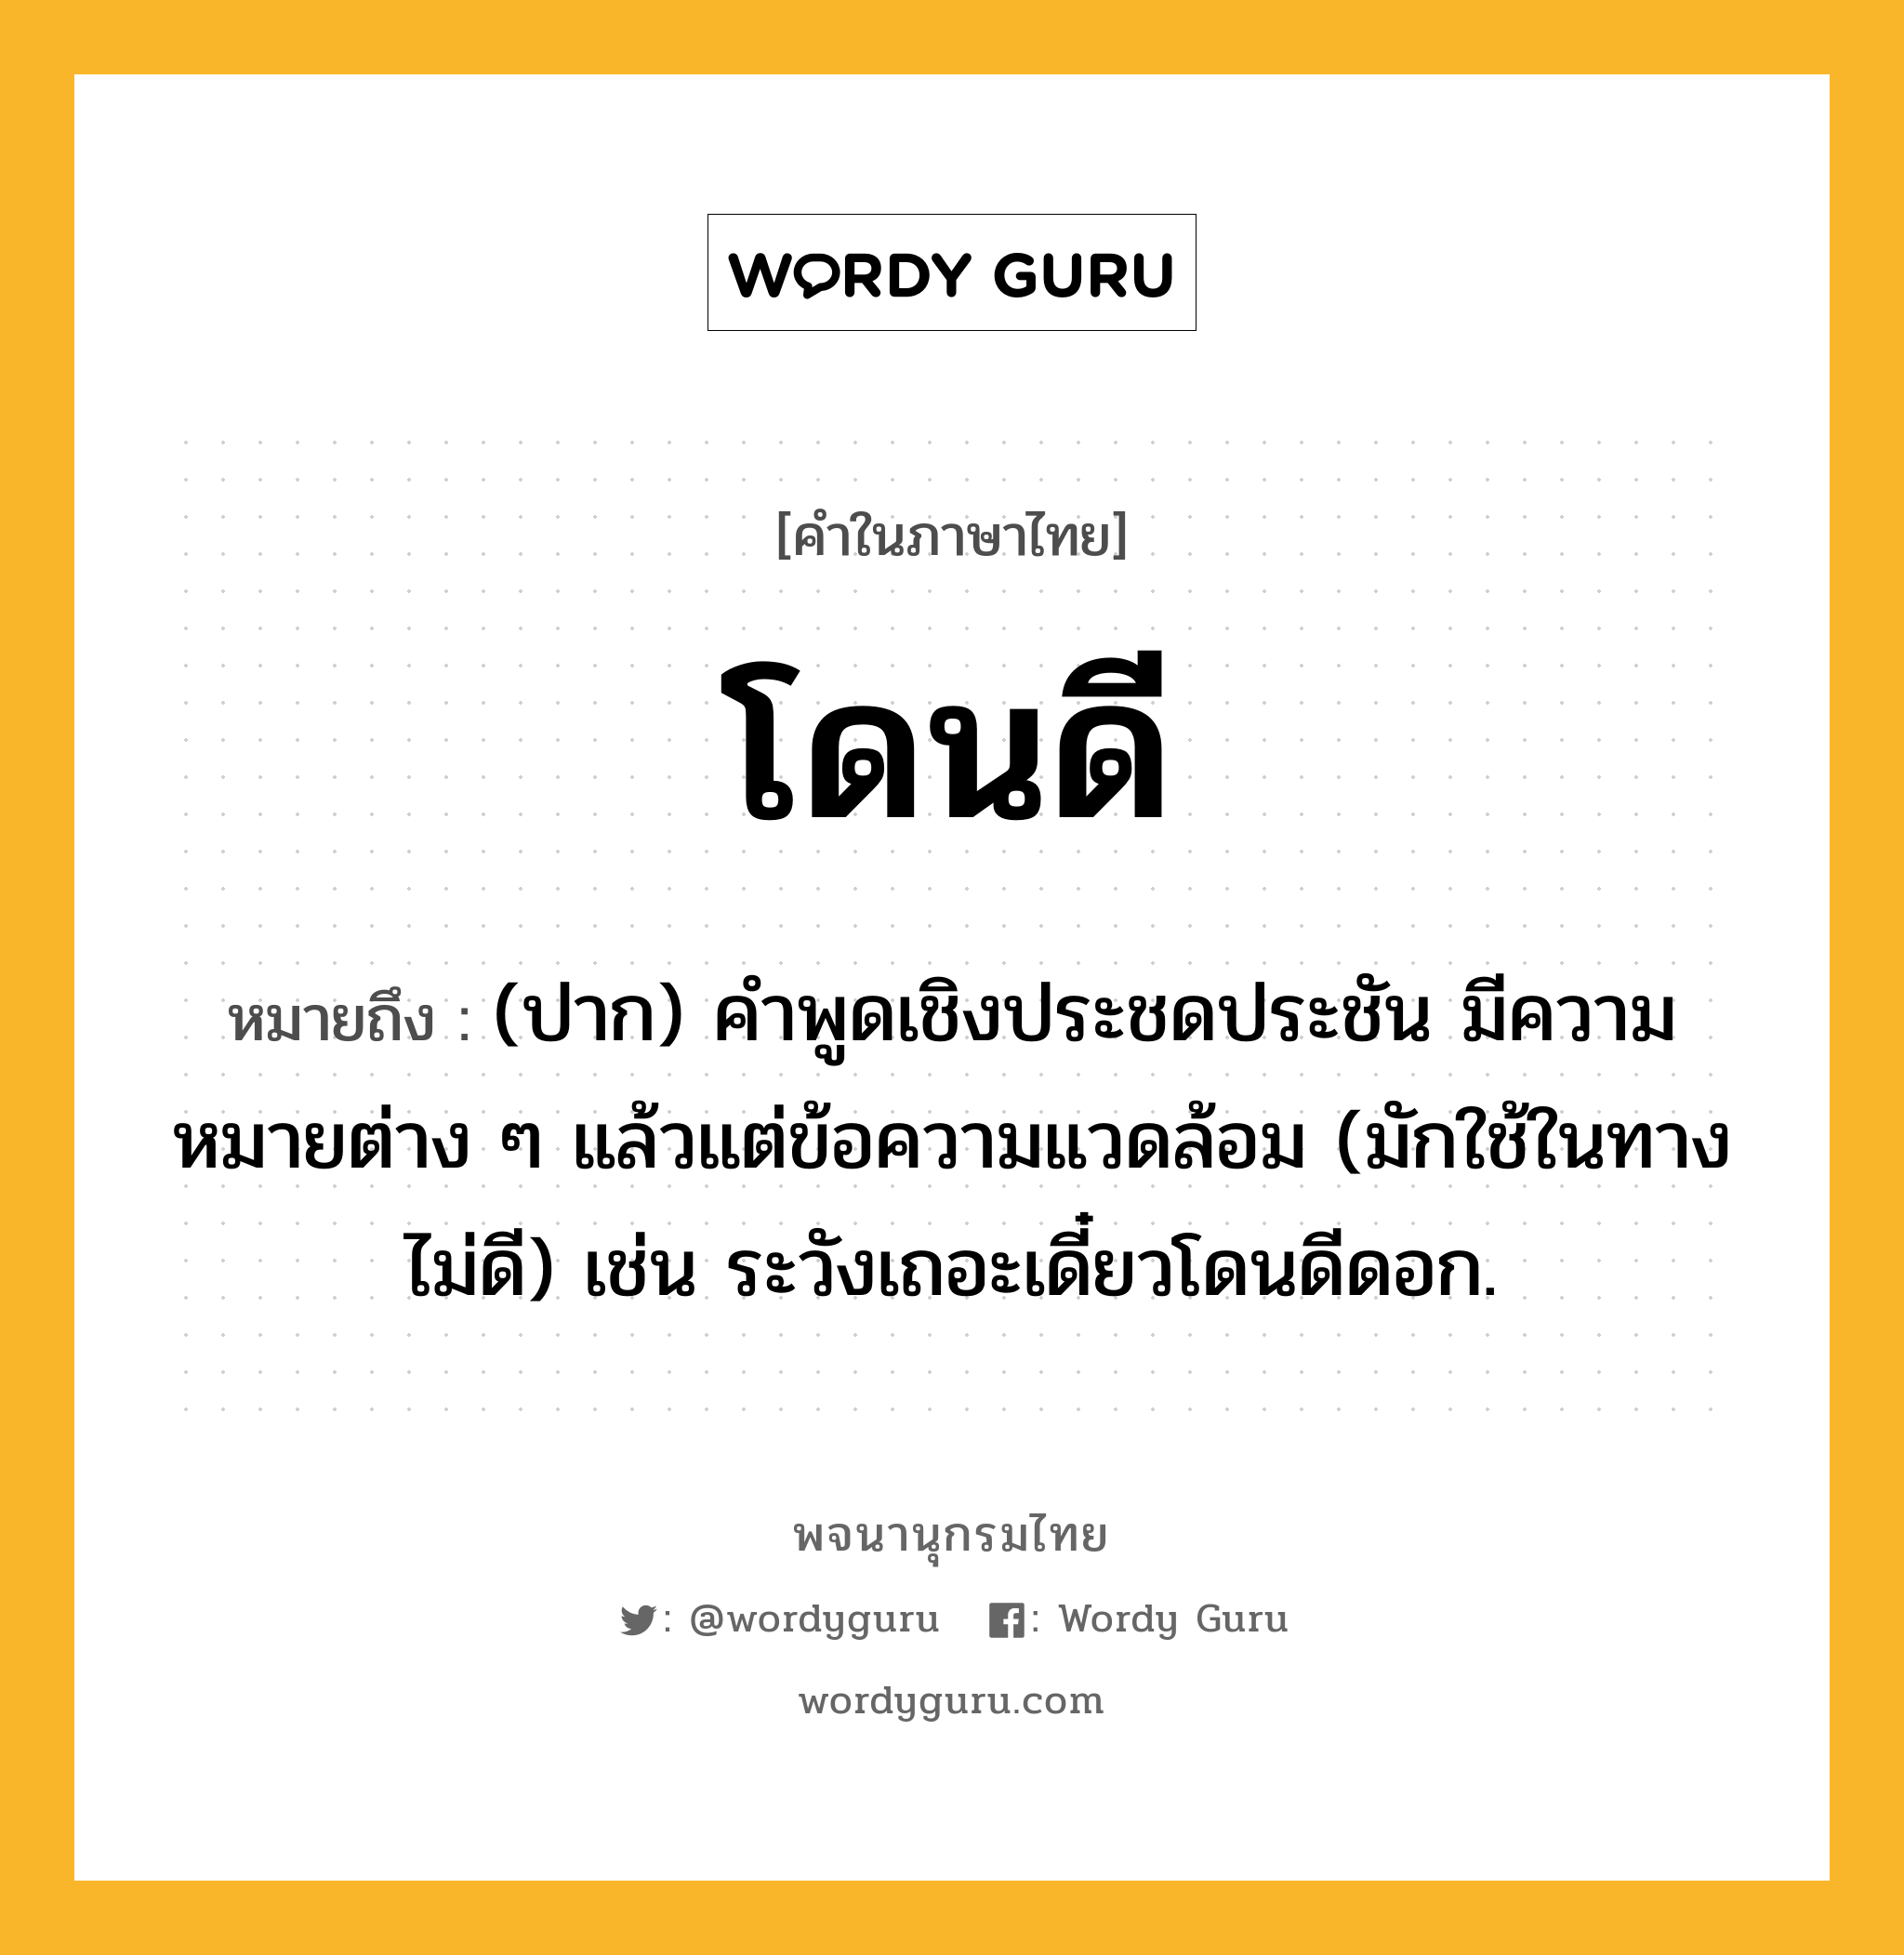 โดนดี หมายถึงอะไร?, คำในภาษาไทย โดนดี หมายถึง (ปาก) คําพูดเชิงประชดประชัน มีความหมายต่าง ๆ แล้วแต่ข้อความแวดล้อม (มักใช้ในทางไม่ดี) เช่น ระวังเถอะเดี๋ยวโดนดีดอก.